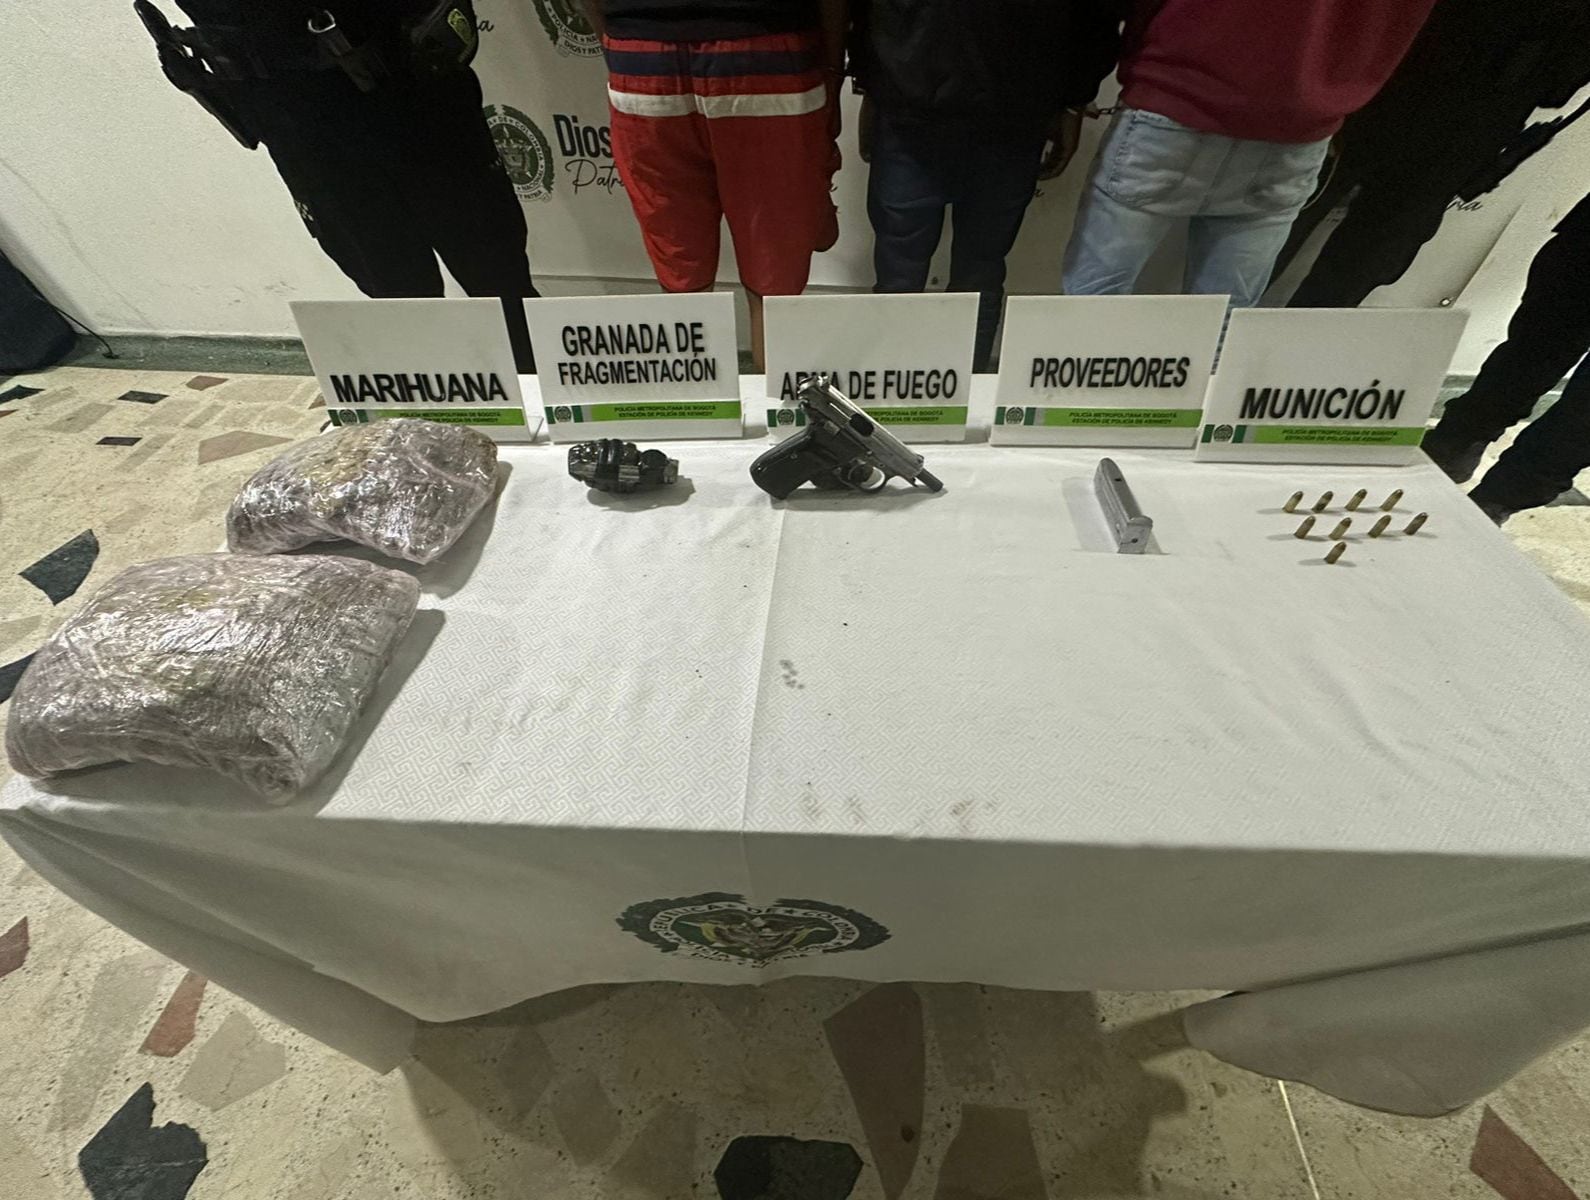 También se halló a los ciudadanos extranjeros mil dosis de marihuana - crédito Policía Bogotá